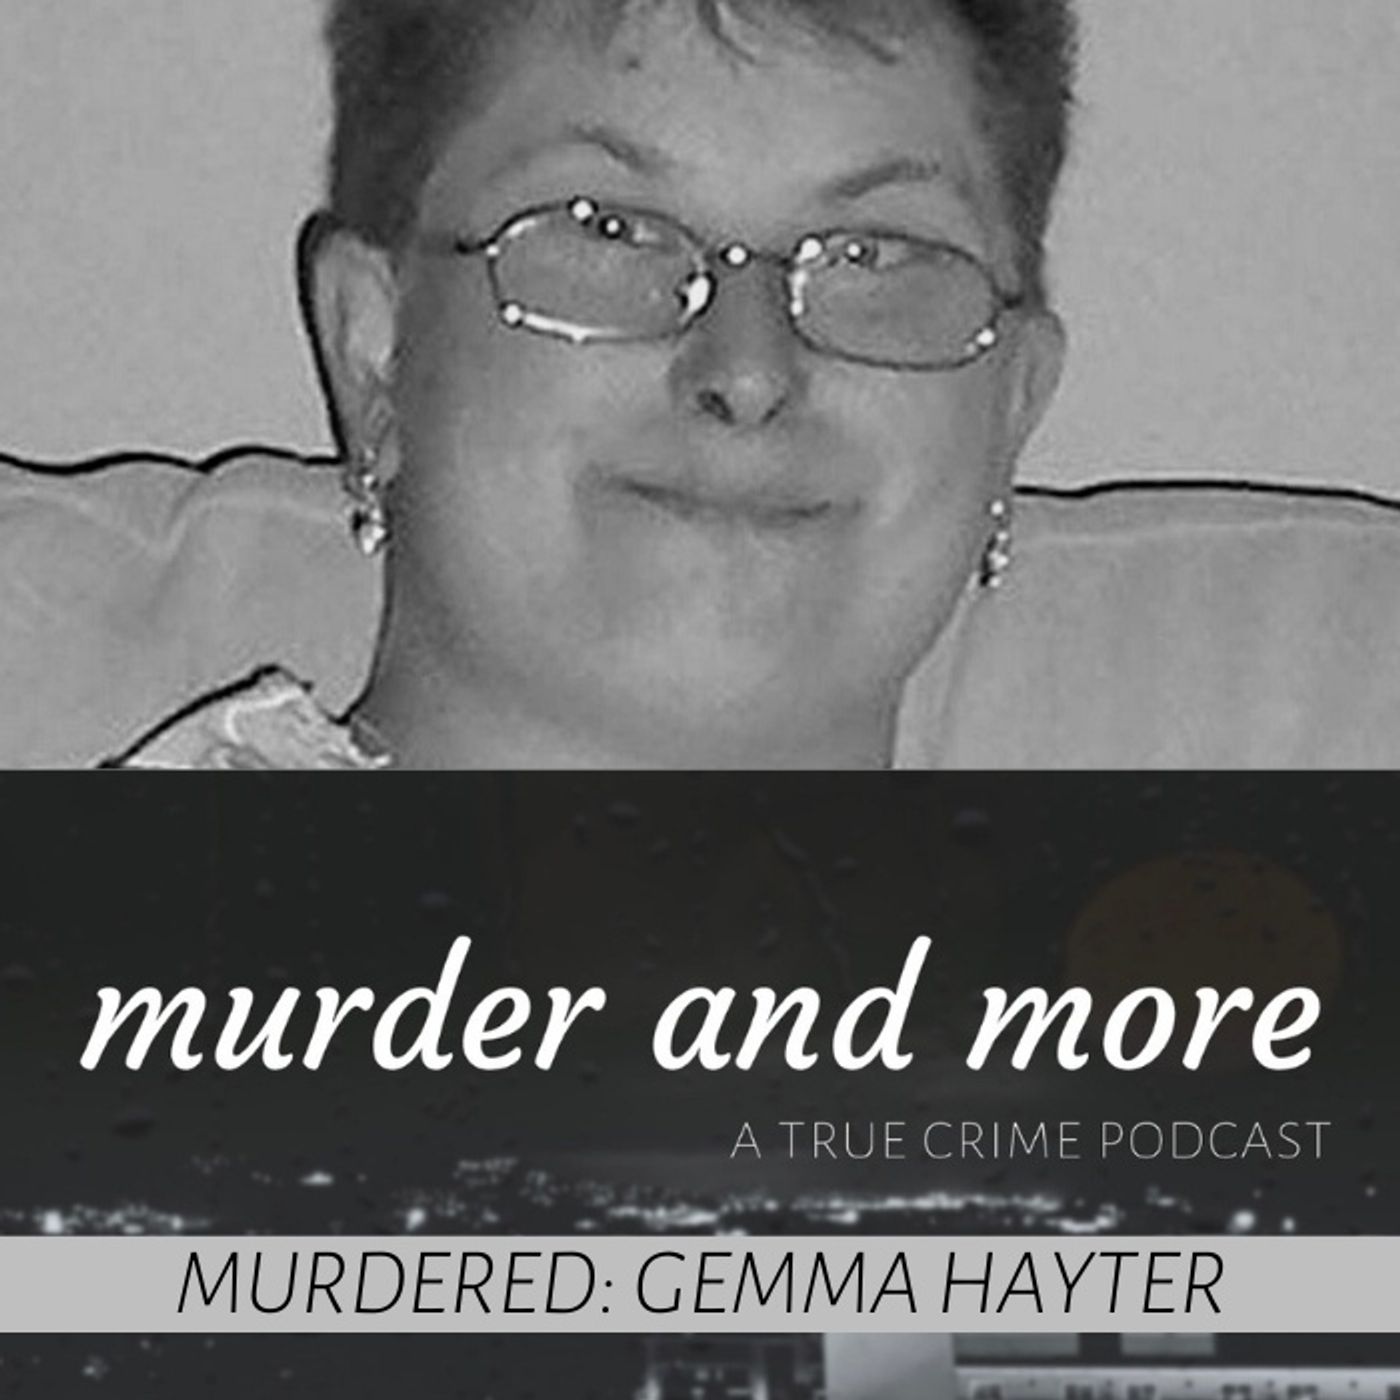 MURDERED: Gemma Hayter by Murder and More